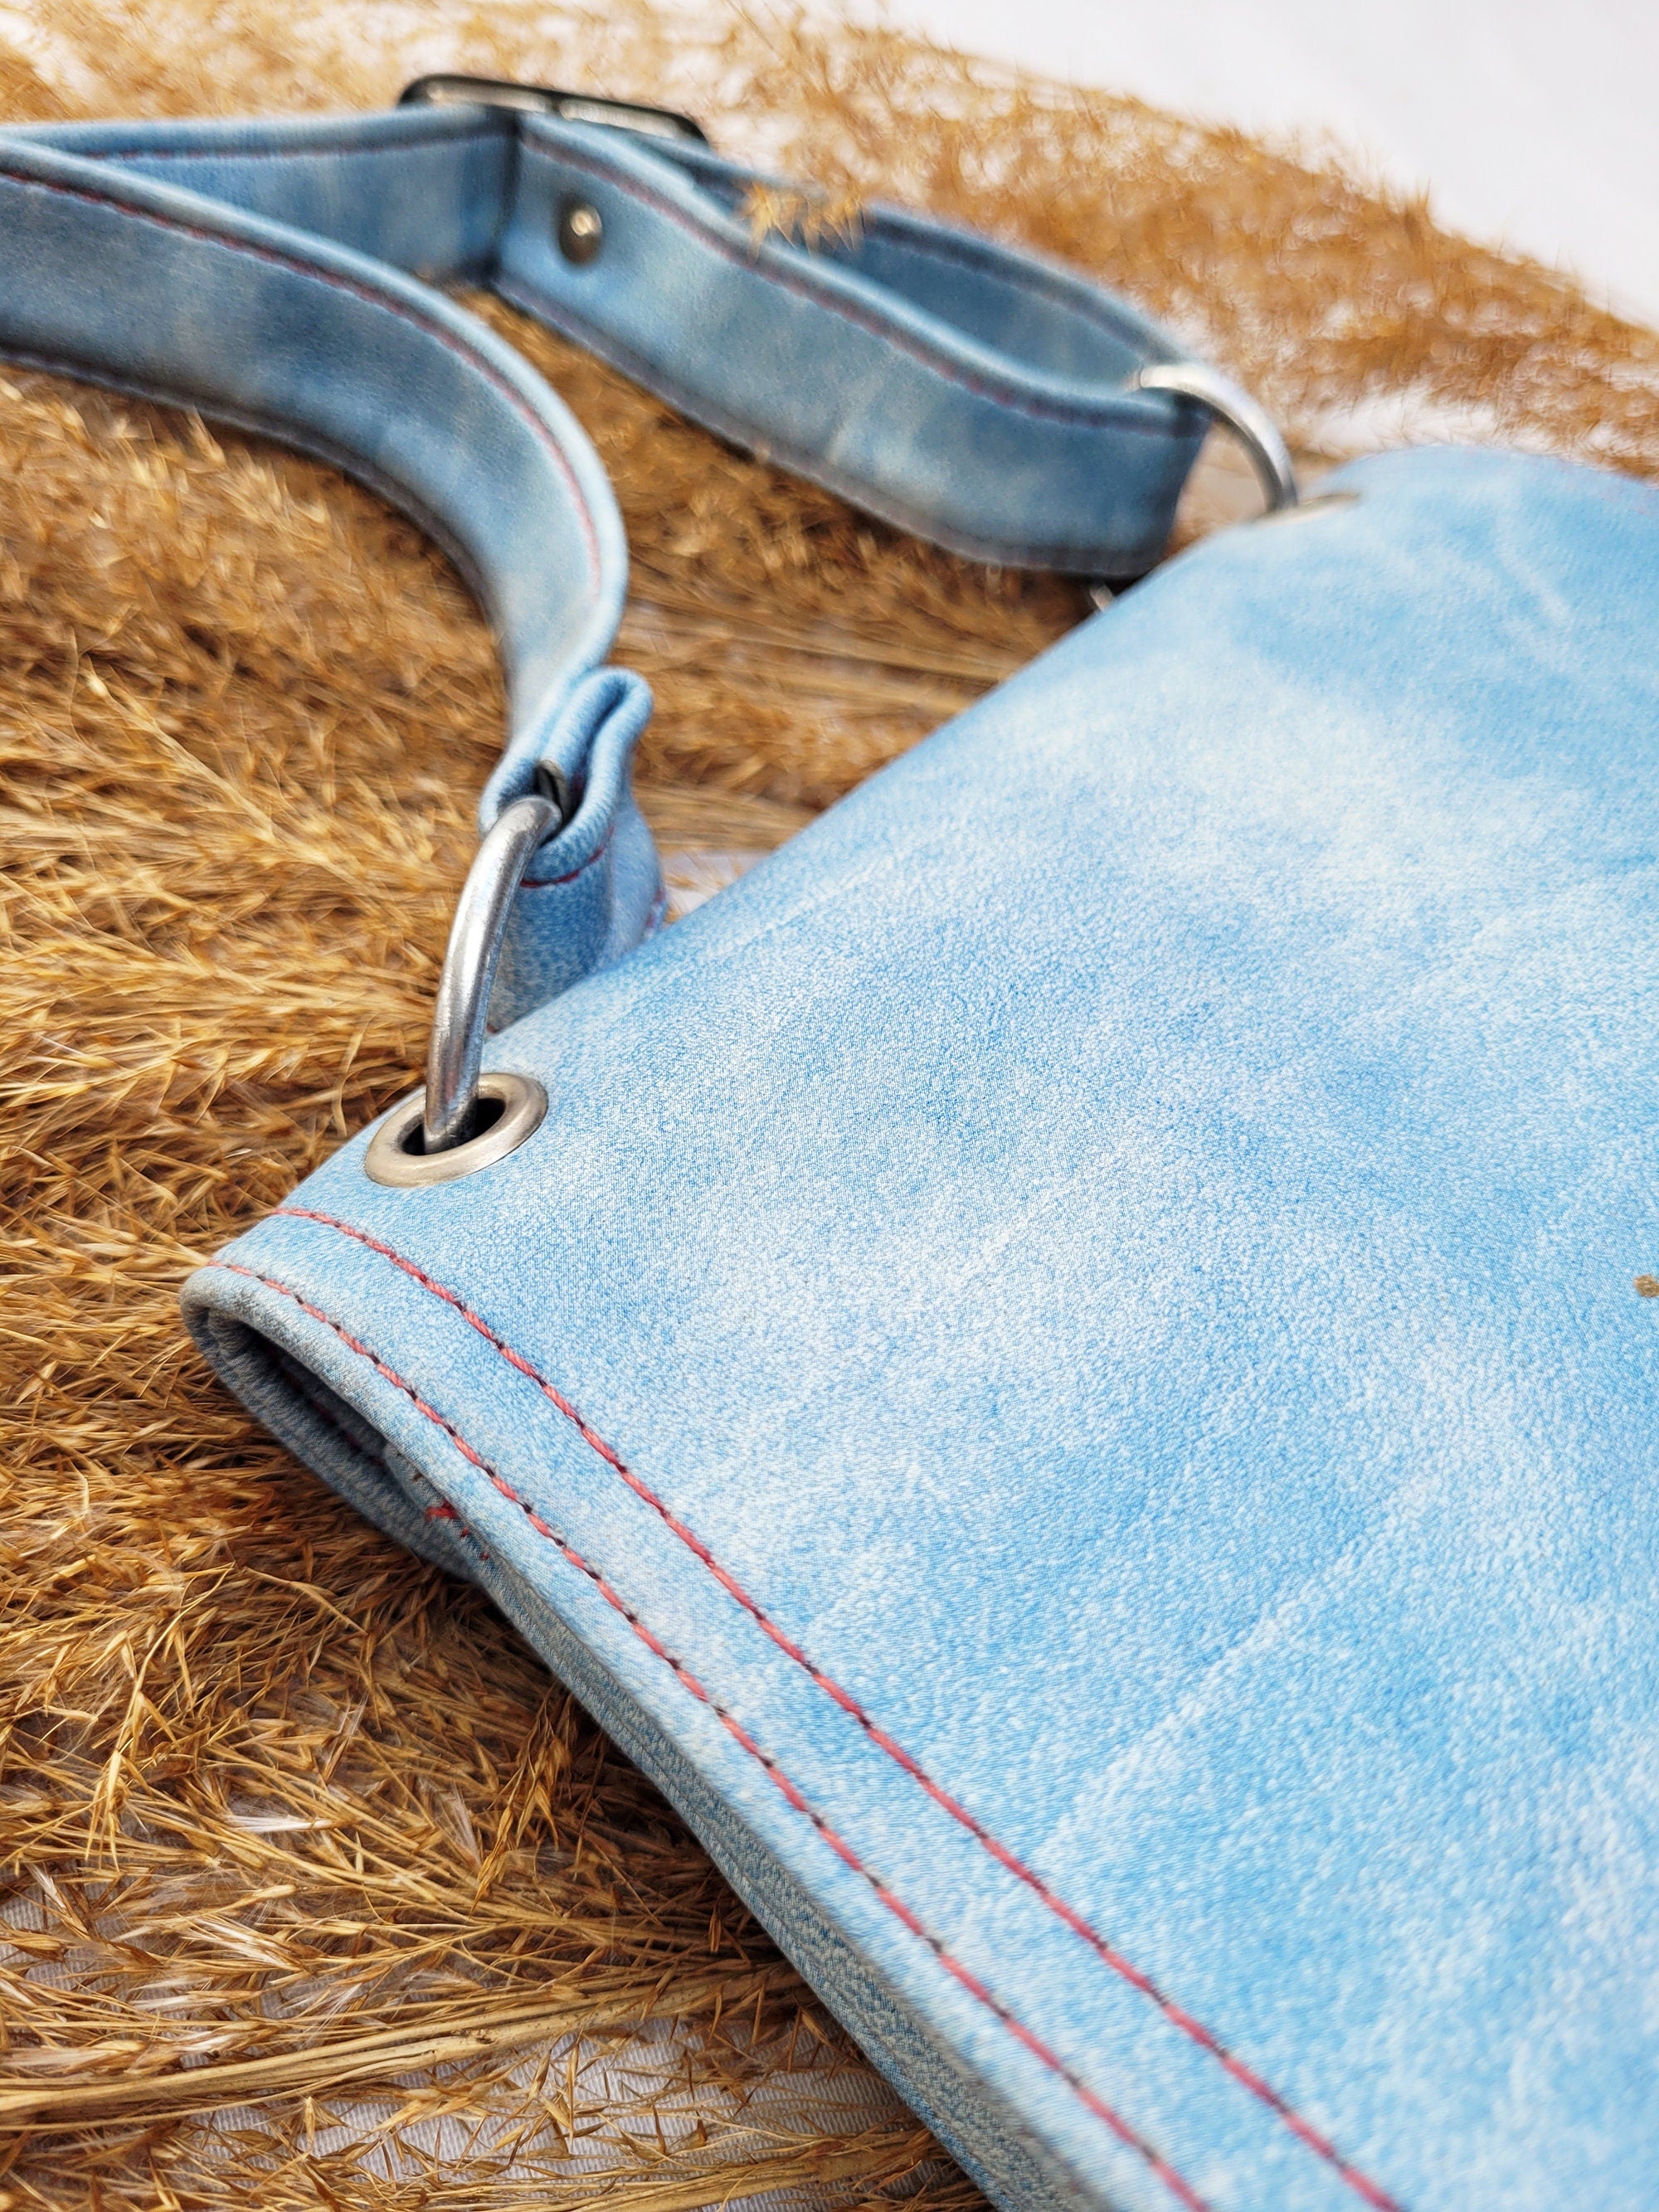 Vintage 70s blue leather saddle bag